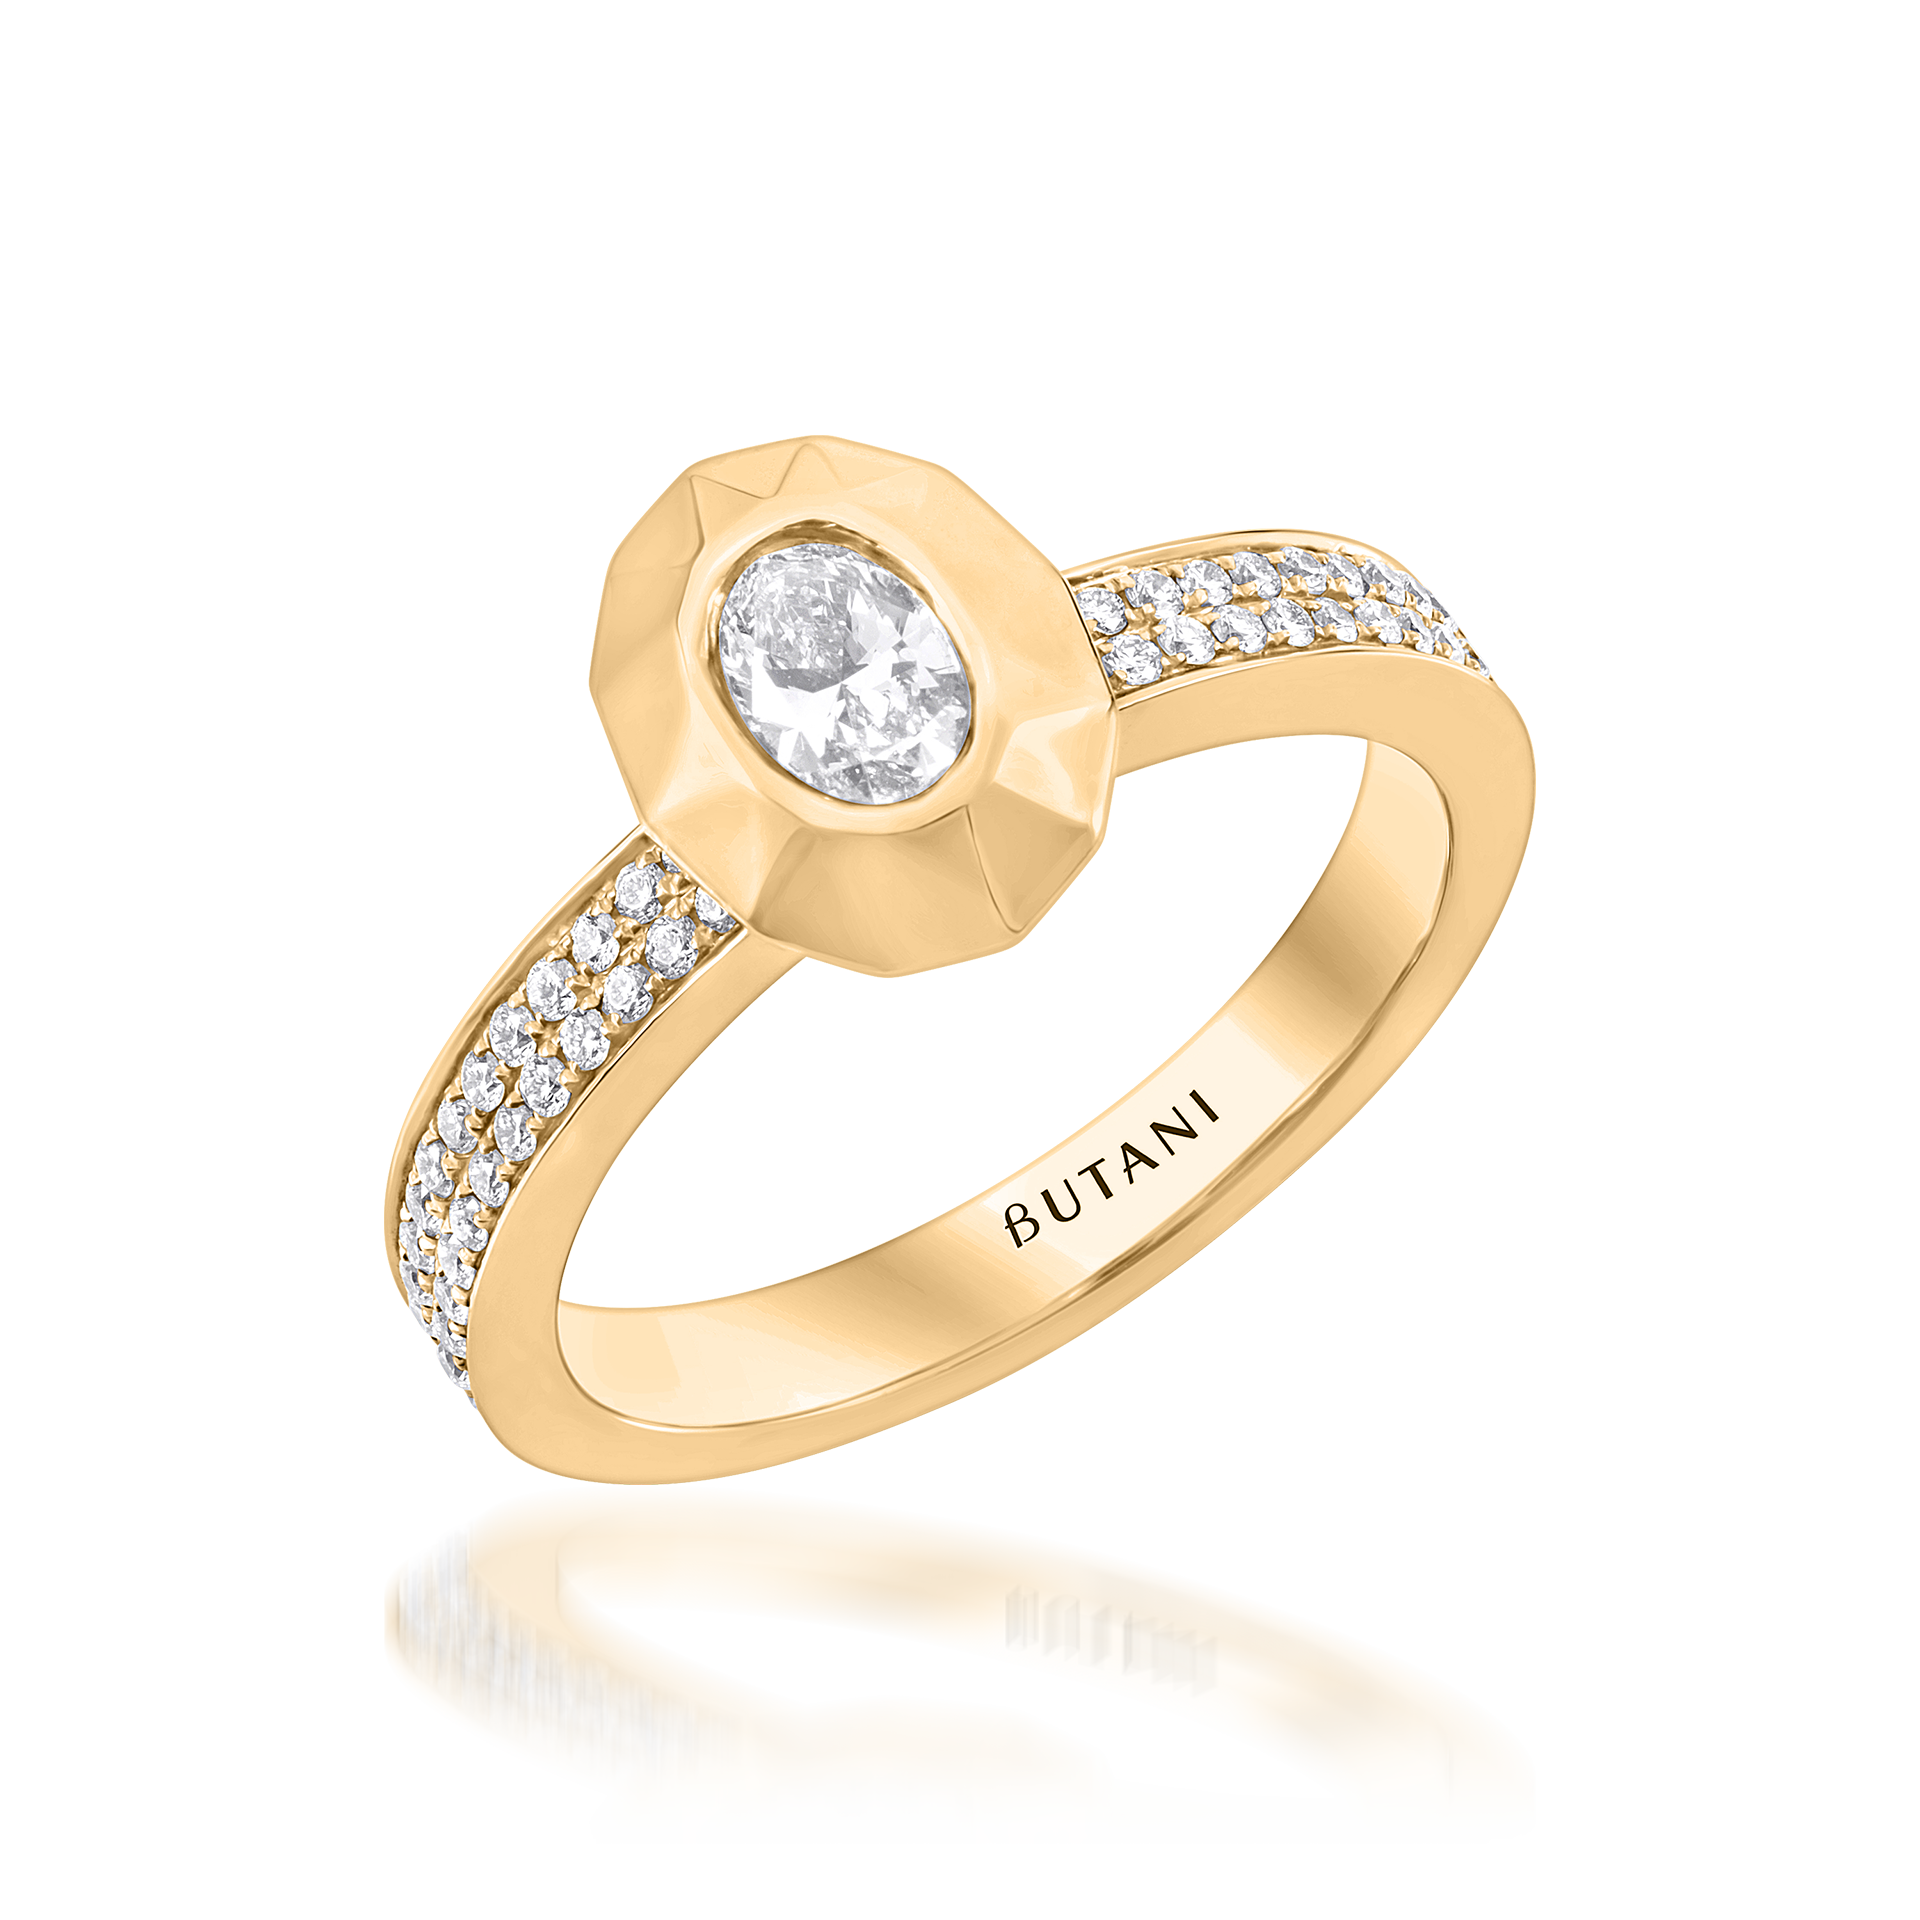 Metropolitan Oval-cut Diamond Ring in 18K Yellow Gold